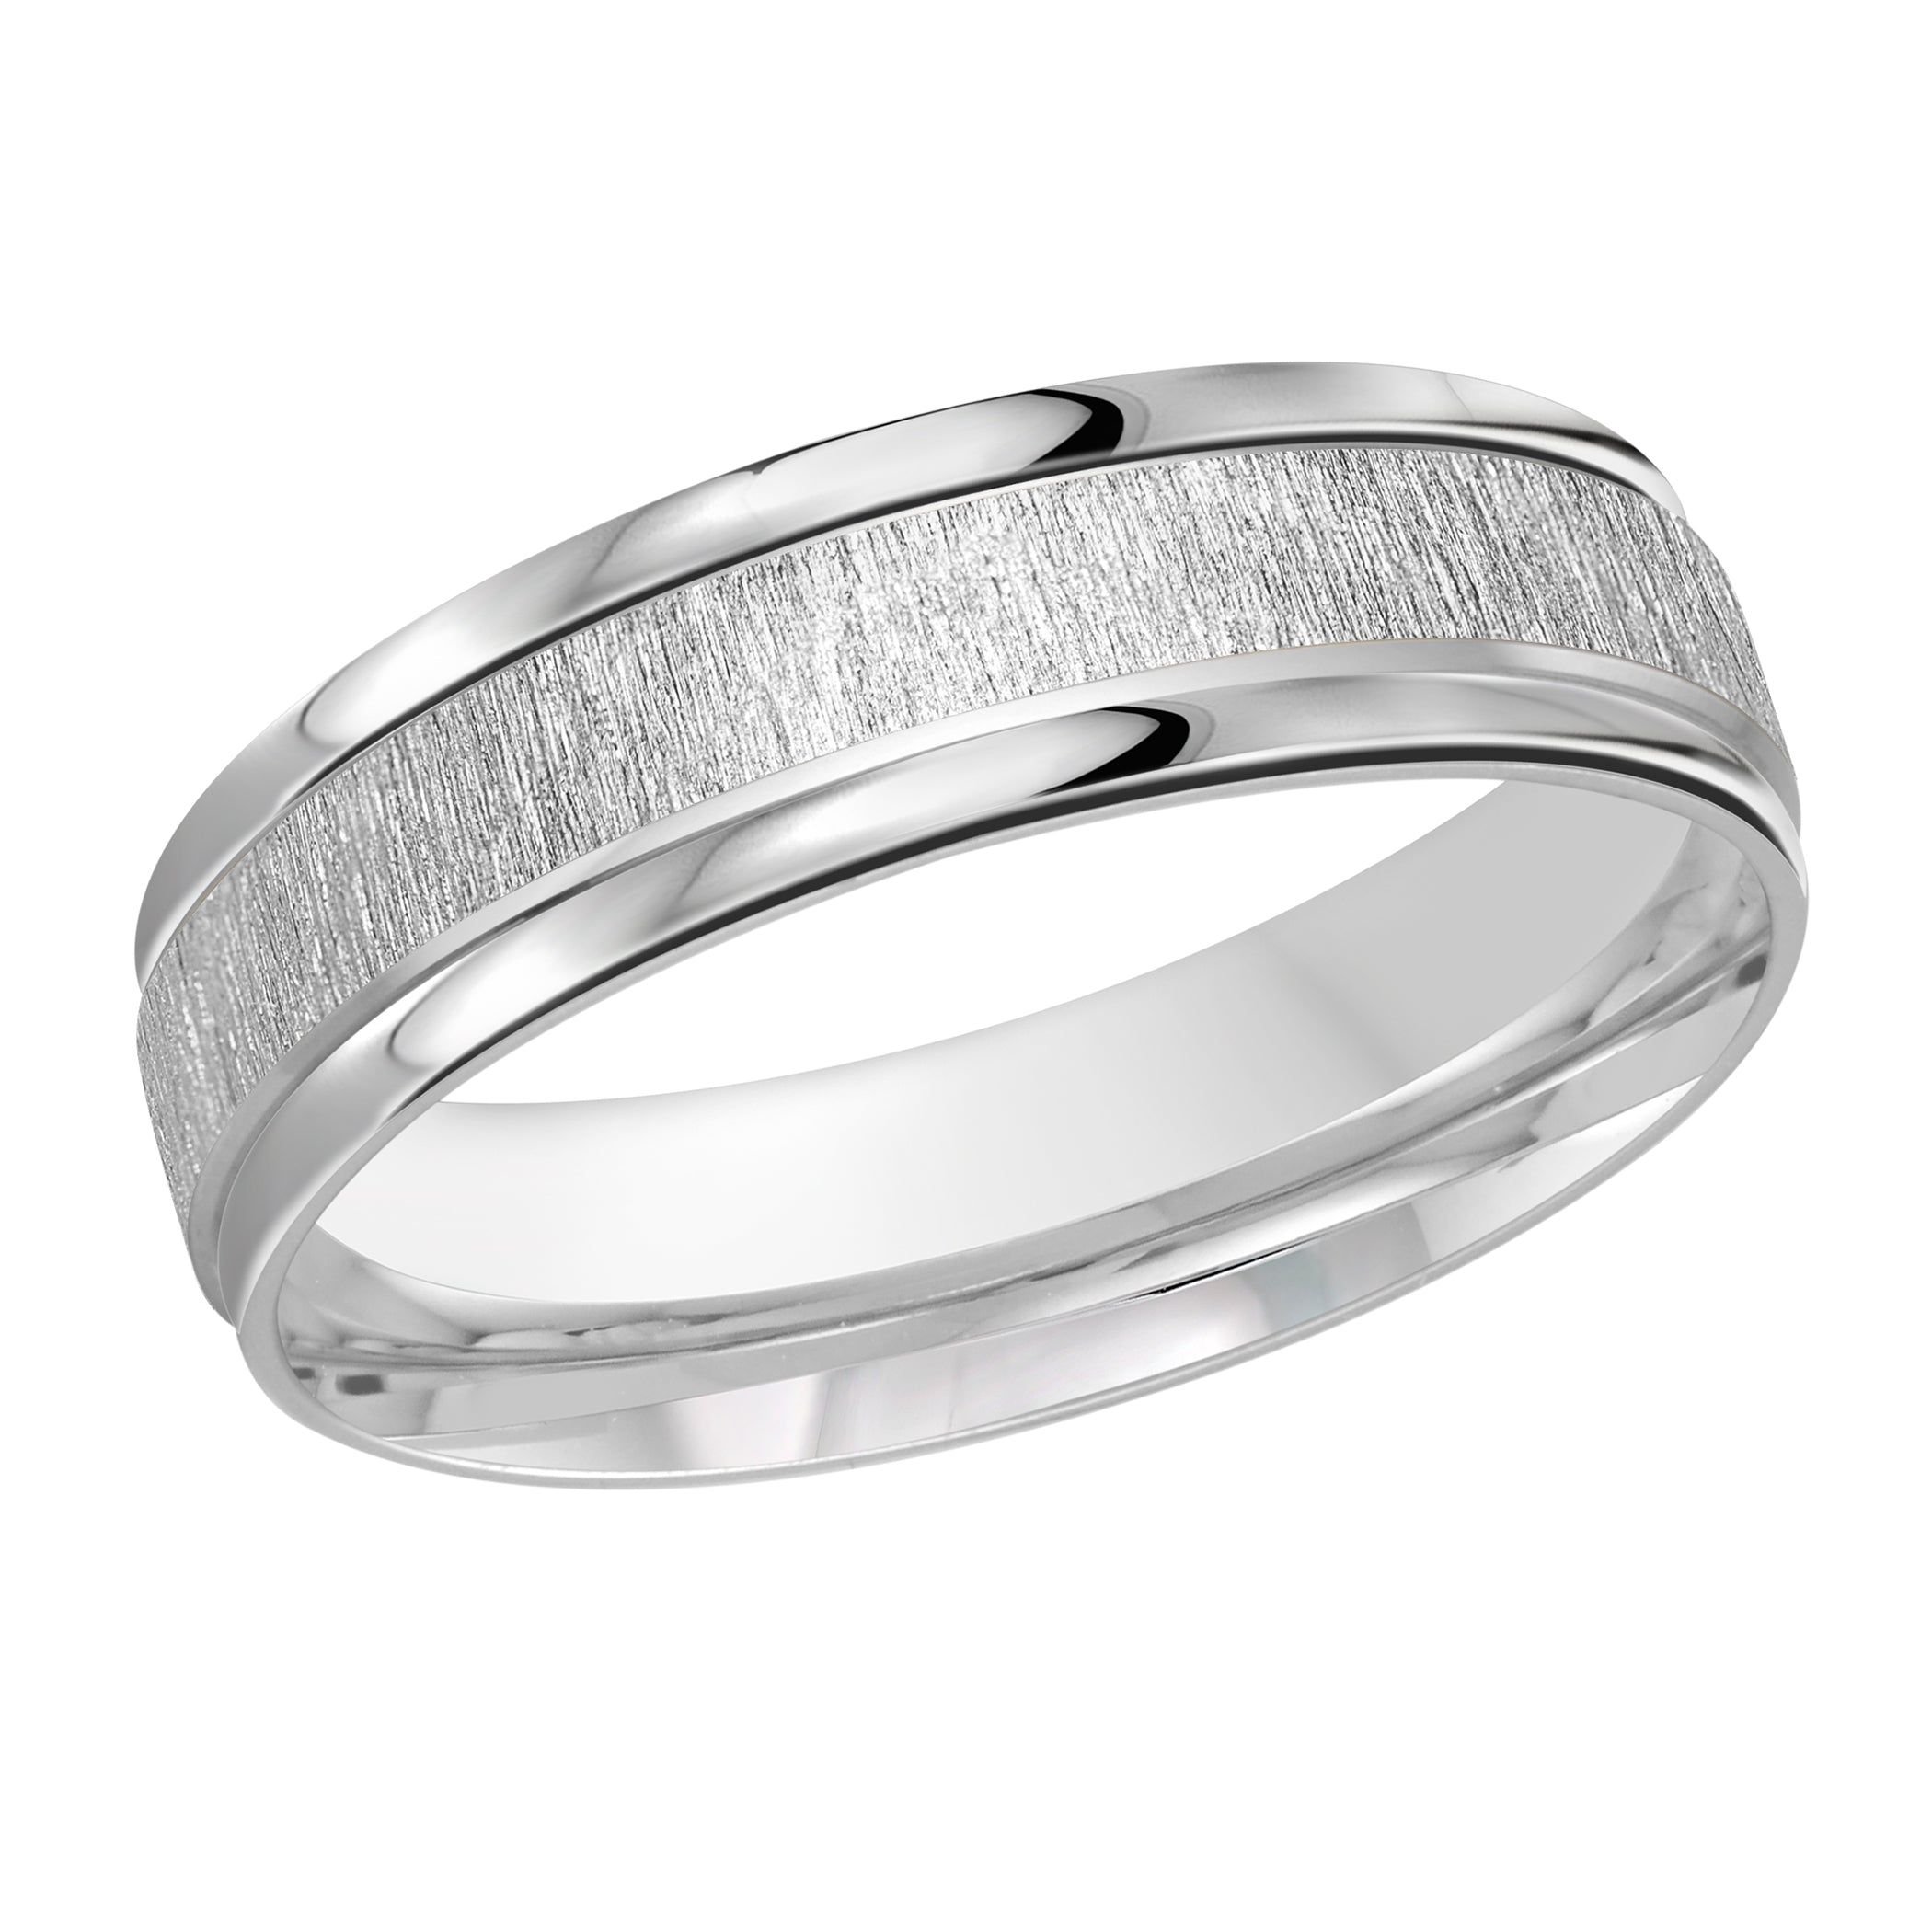 Men's 6mm Sandpaper-finish Wedding Ring